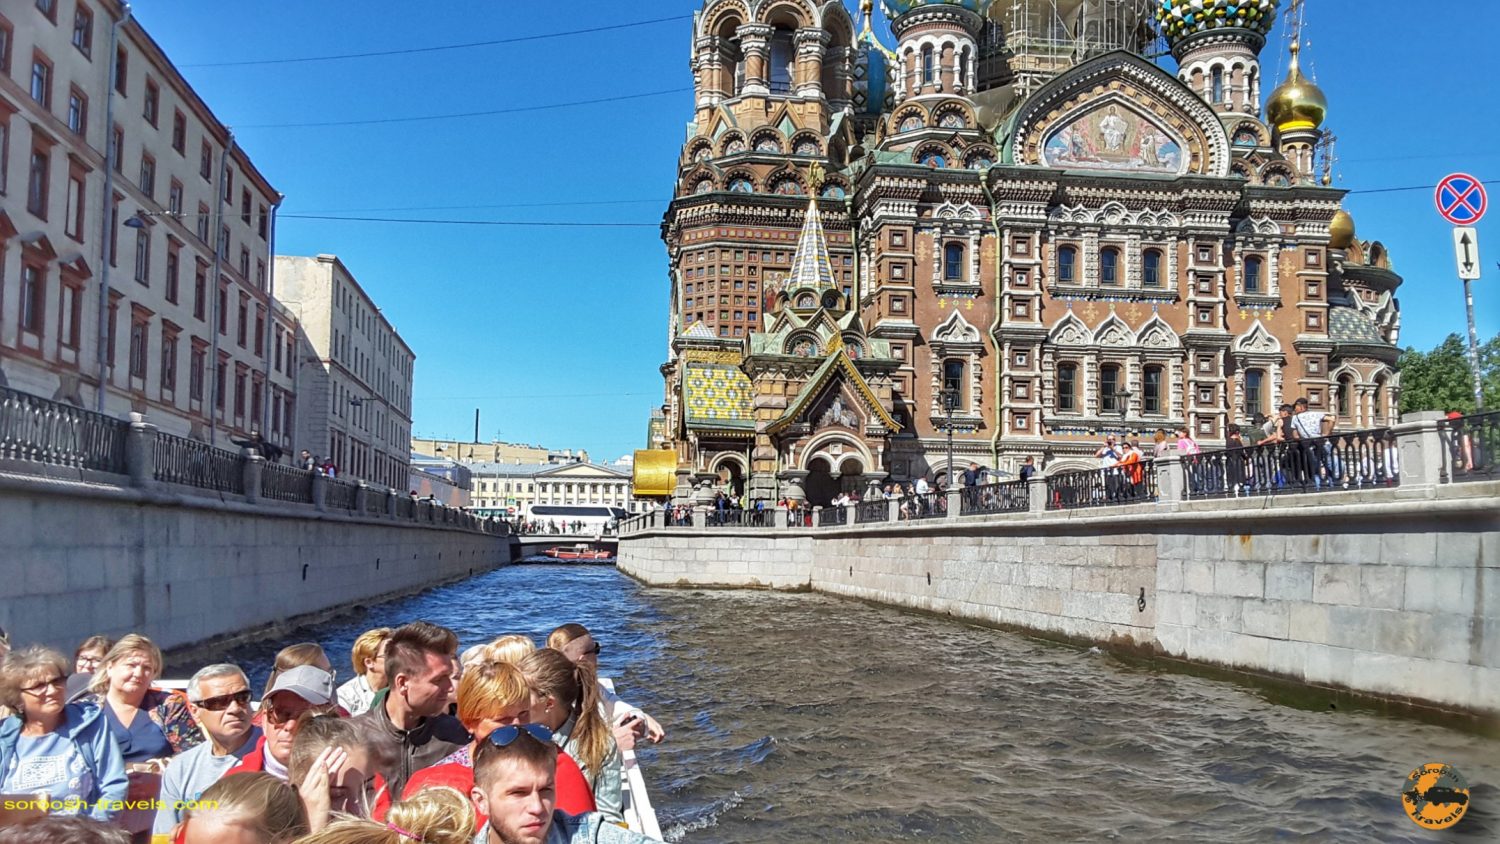 سنت پترزبورگ، روسیه - تابستان 1398 2019